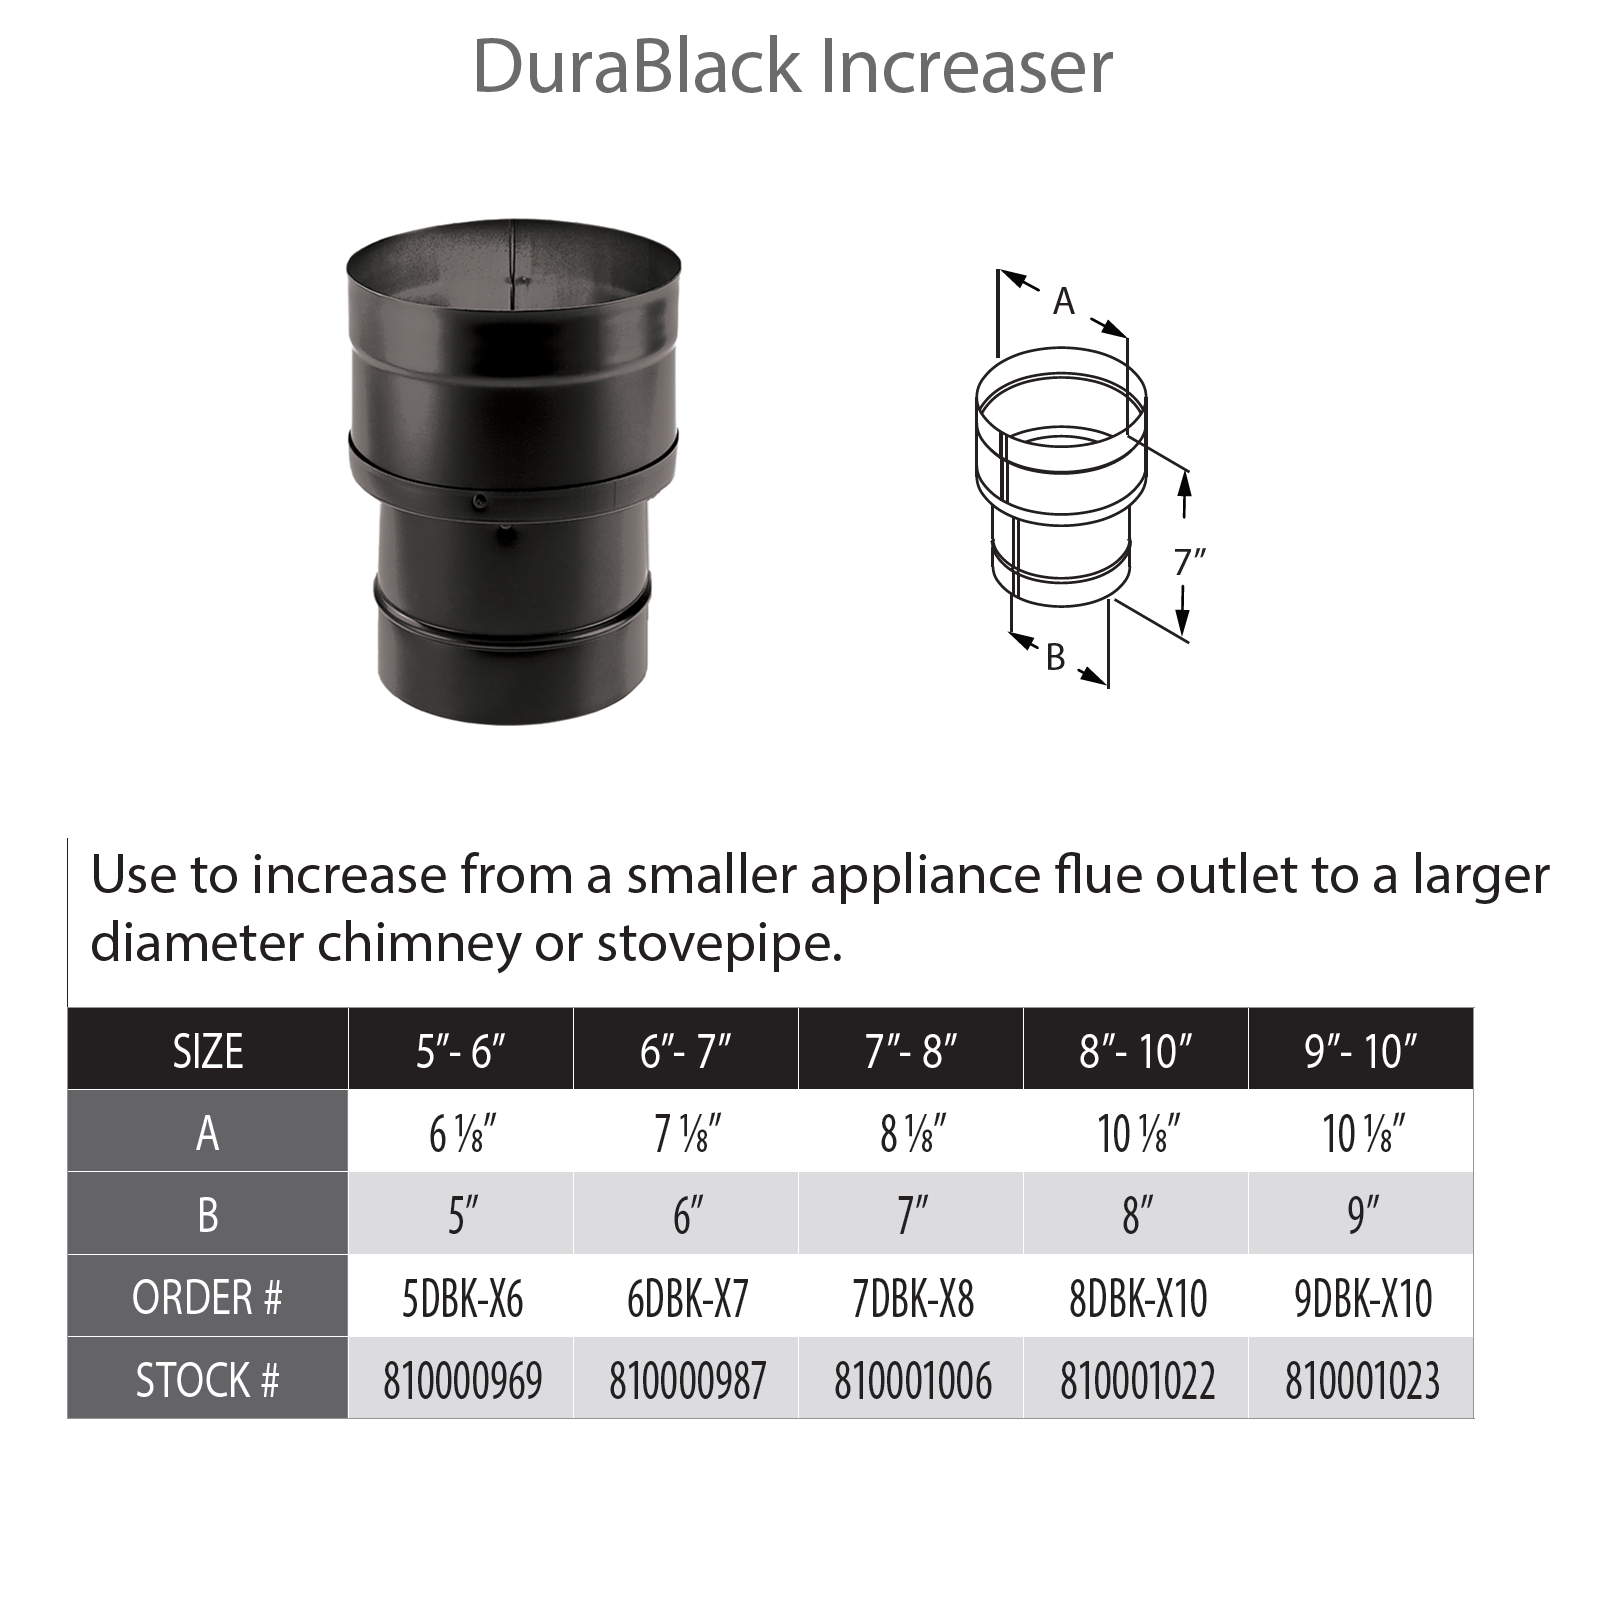 DuraVent DuraBlack 10" Diameter Black Increaser 9" - 10" | 9DBK-X10